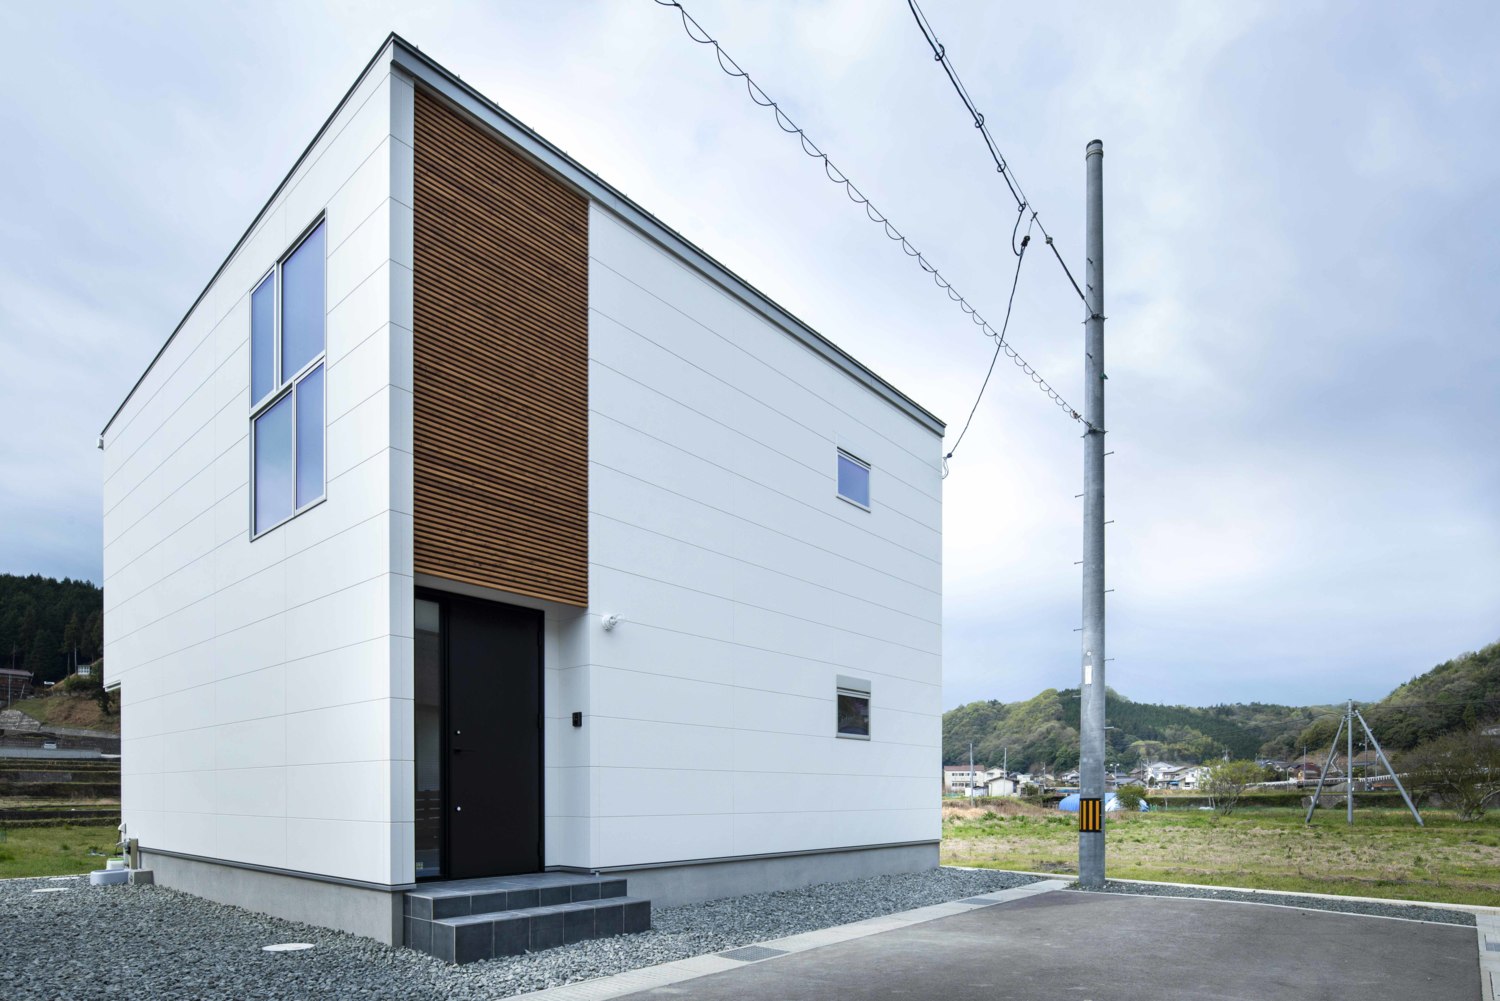 白い箱型のシンプルな形状の建物に木製ルーバーや黒色の玄関ドアが目を引く、若々しく優しいイメージの外観。